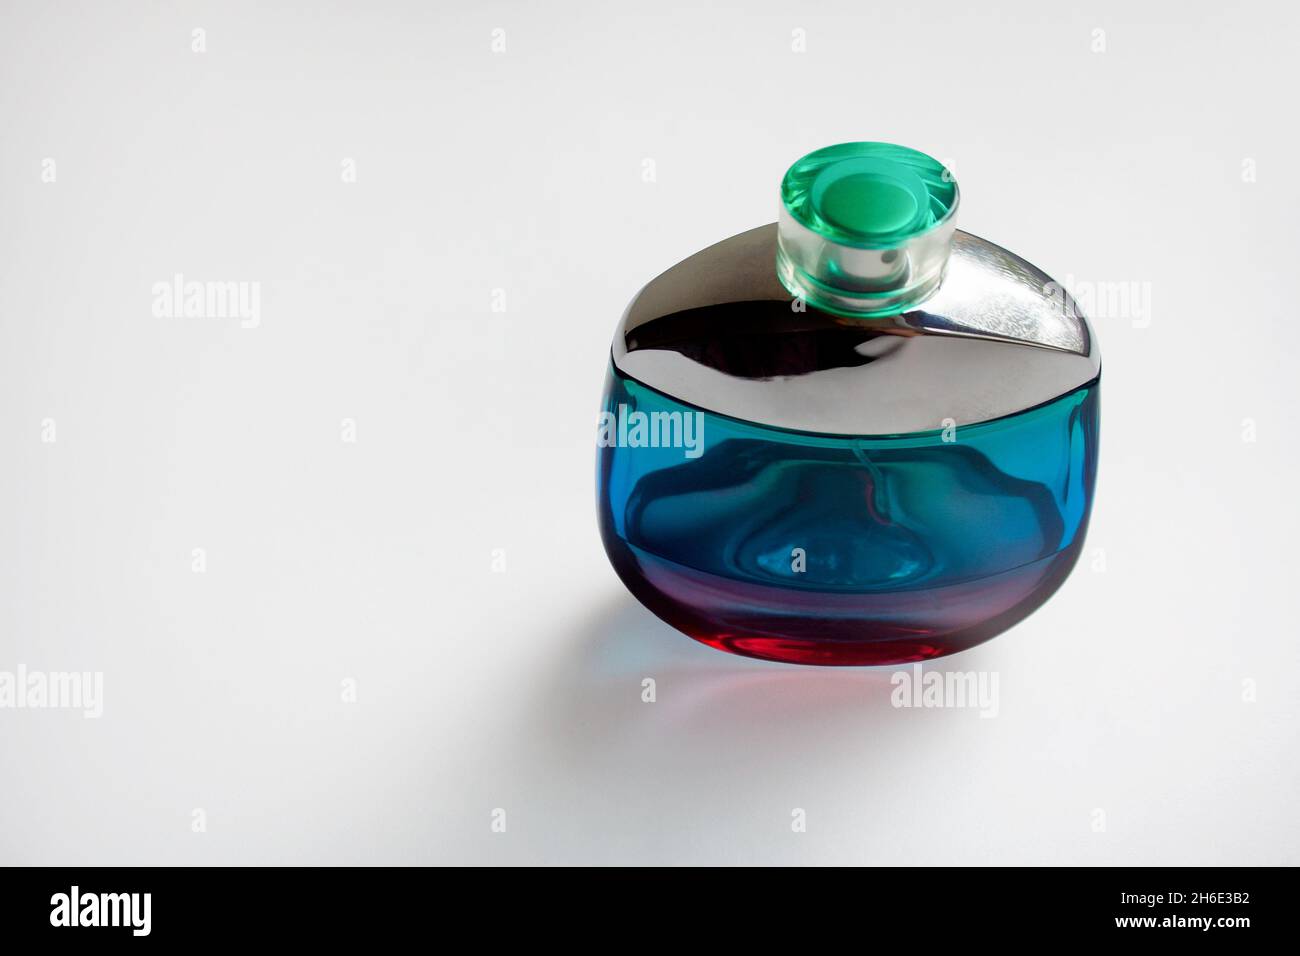 Ultramarine glass perfume bottle isolated on white background Stock Photo